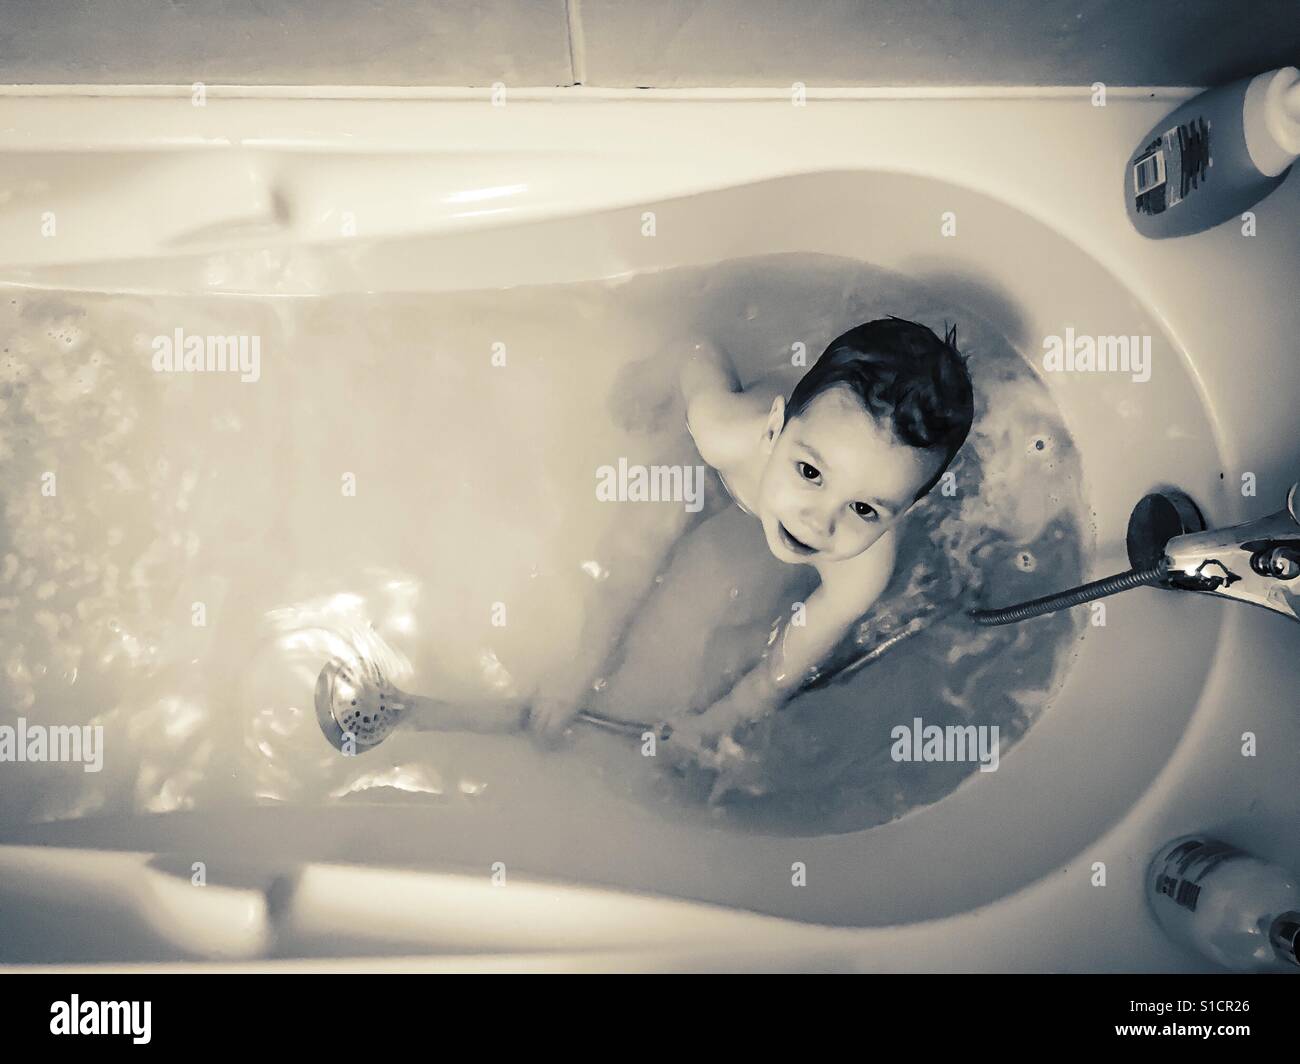 Schwarz / weiß Foto von Baby Boy ein Bad zu nehmen Stockfoto